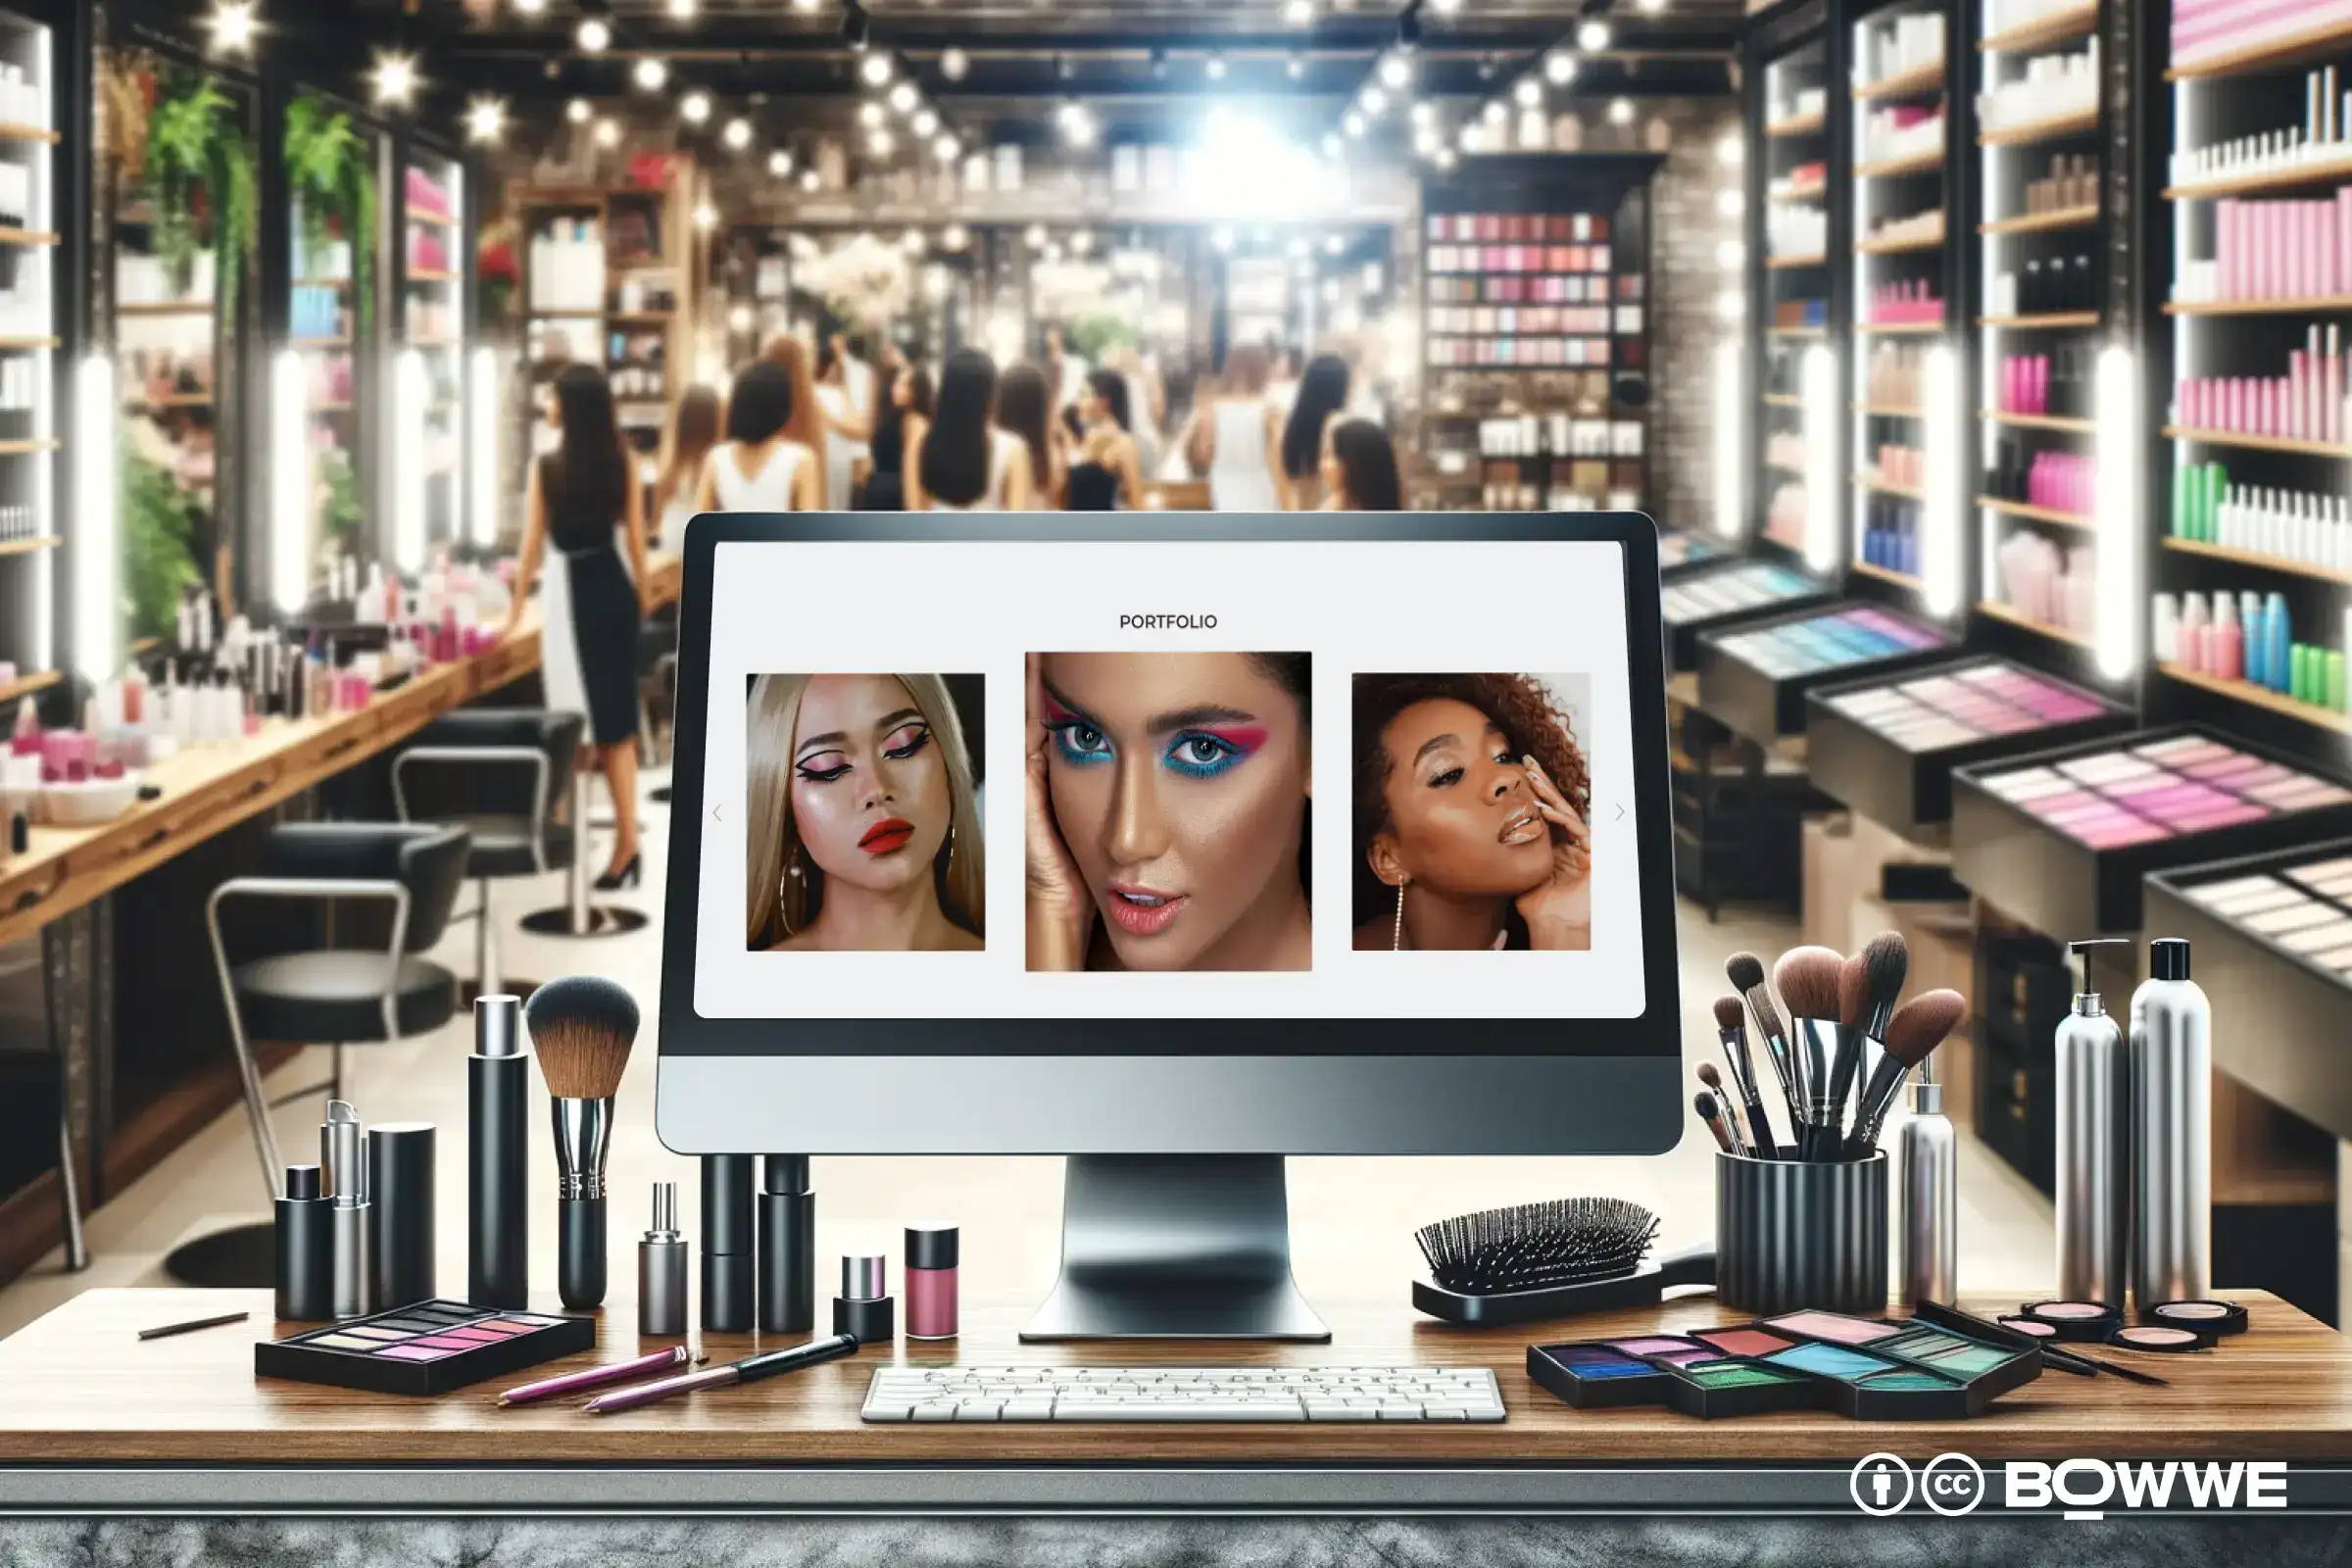 ноутбук с разделом с портфолио, показывающим макияж на сайте, шаблон для салона макияжа